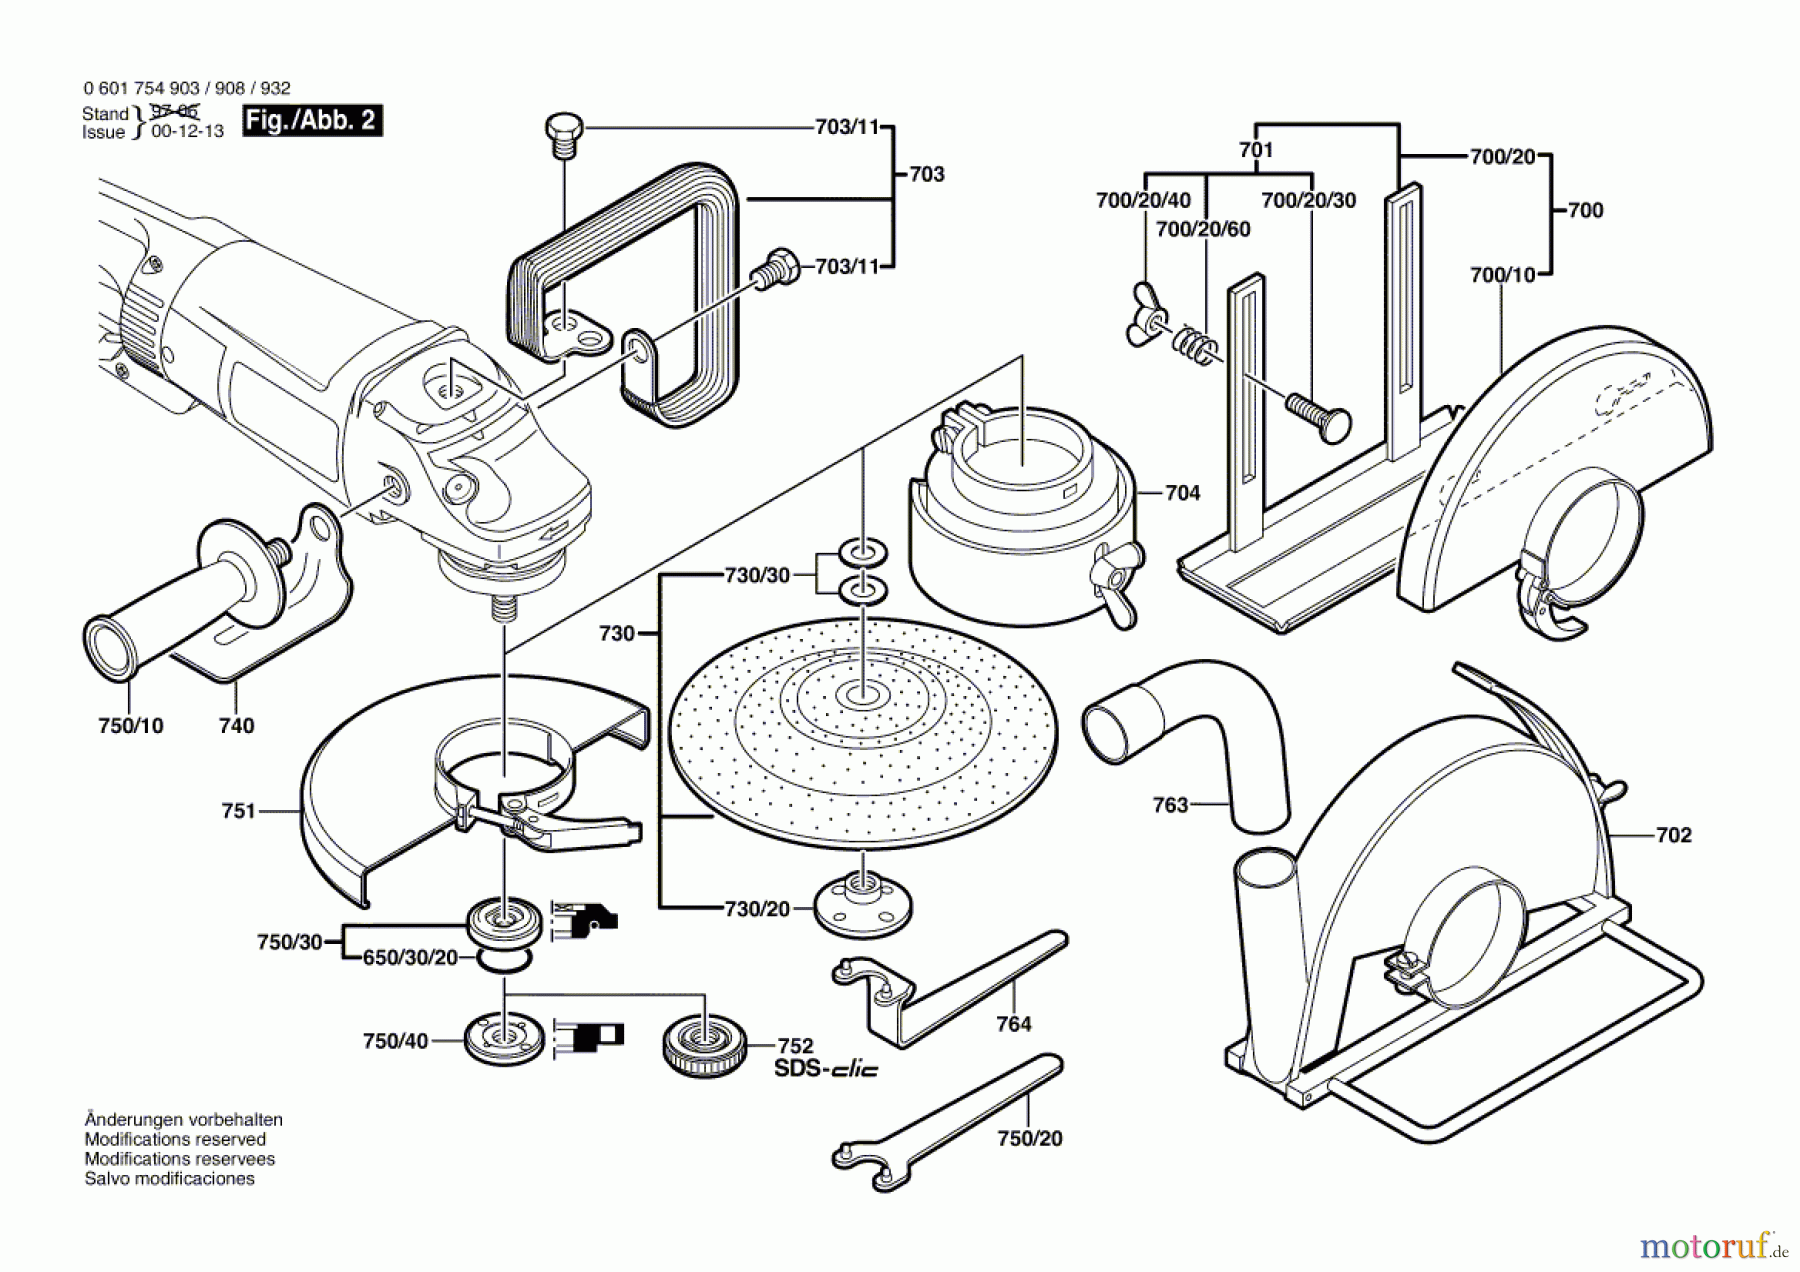  Bosch Werkzeug Winkelschleifer GWS 23-230 J Seite 2